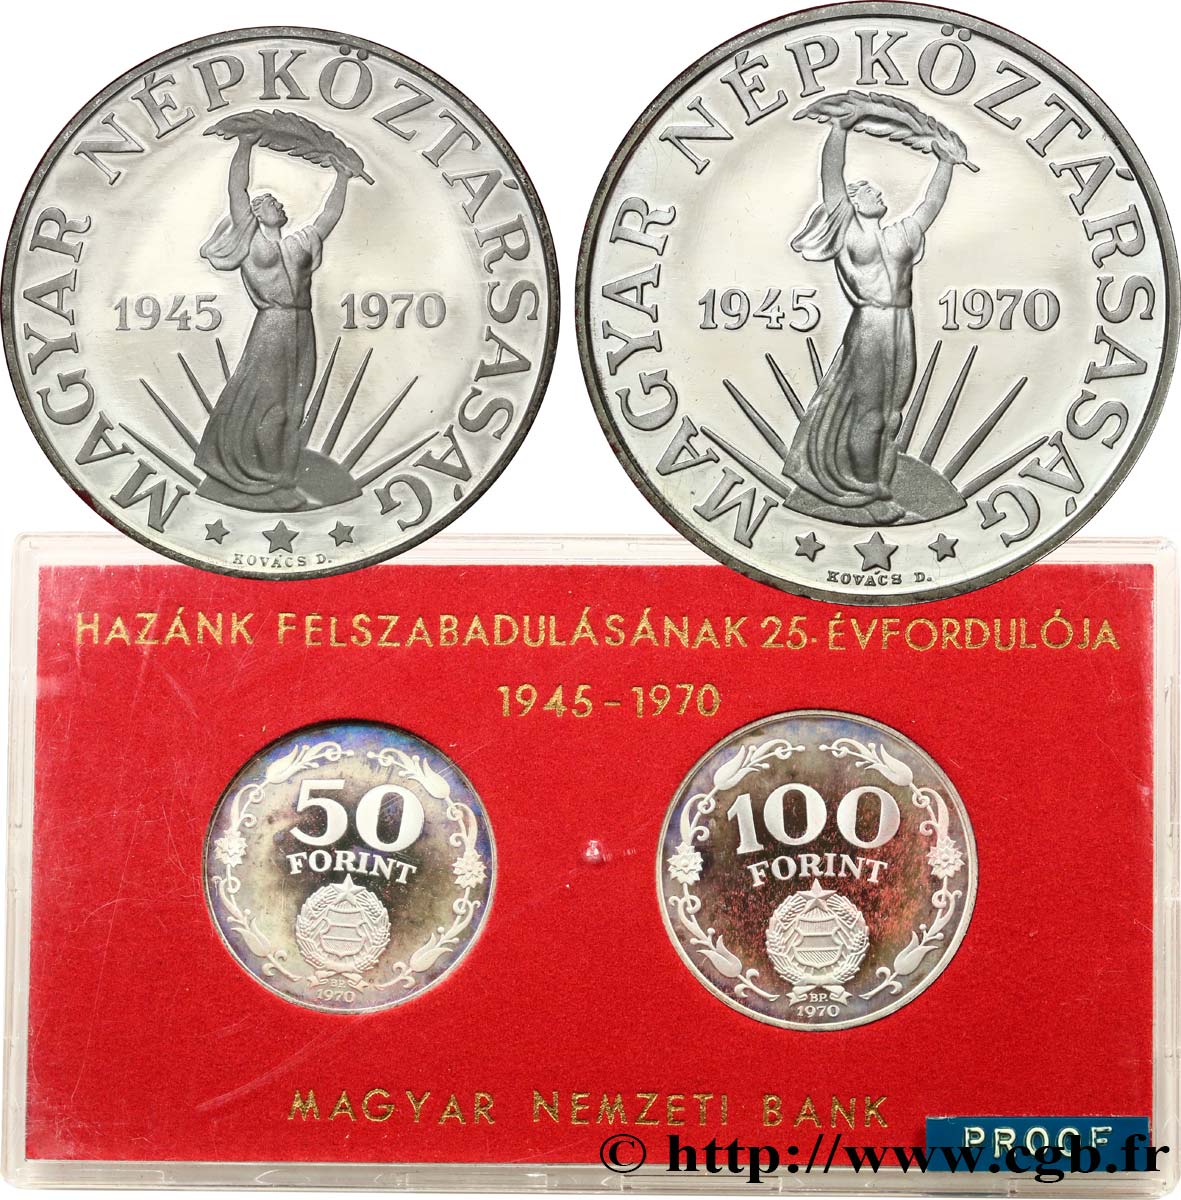 UNGHERIA Série Proof - 2 monnaies - Forint 25e anniversaire de la Libération 1945-1970 1970 Budapest BE 